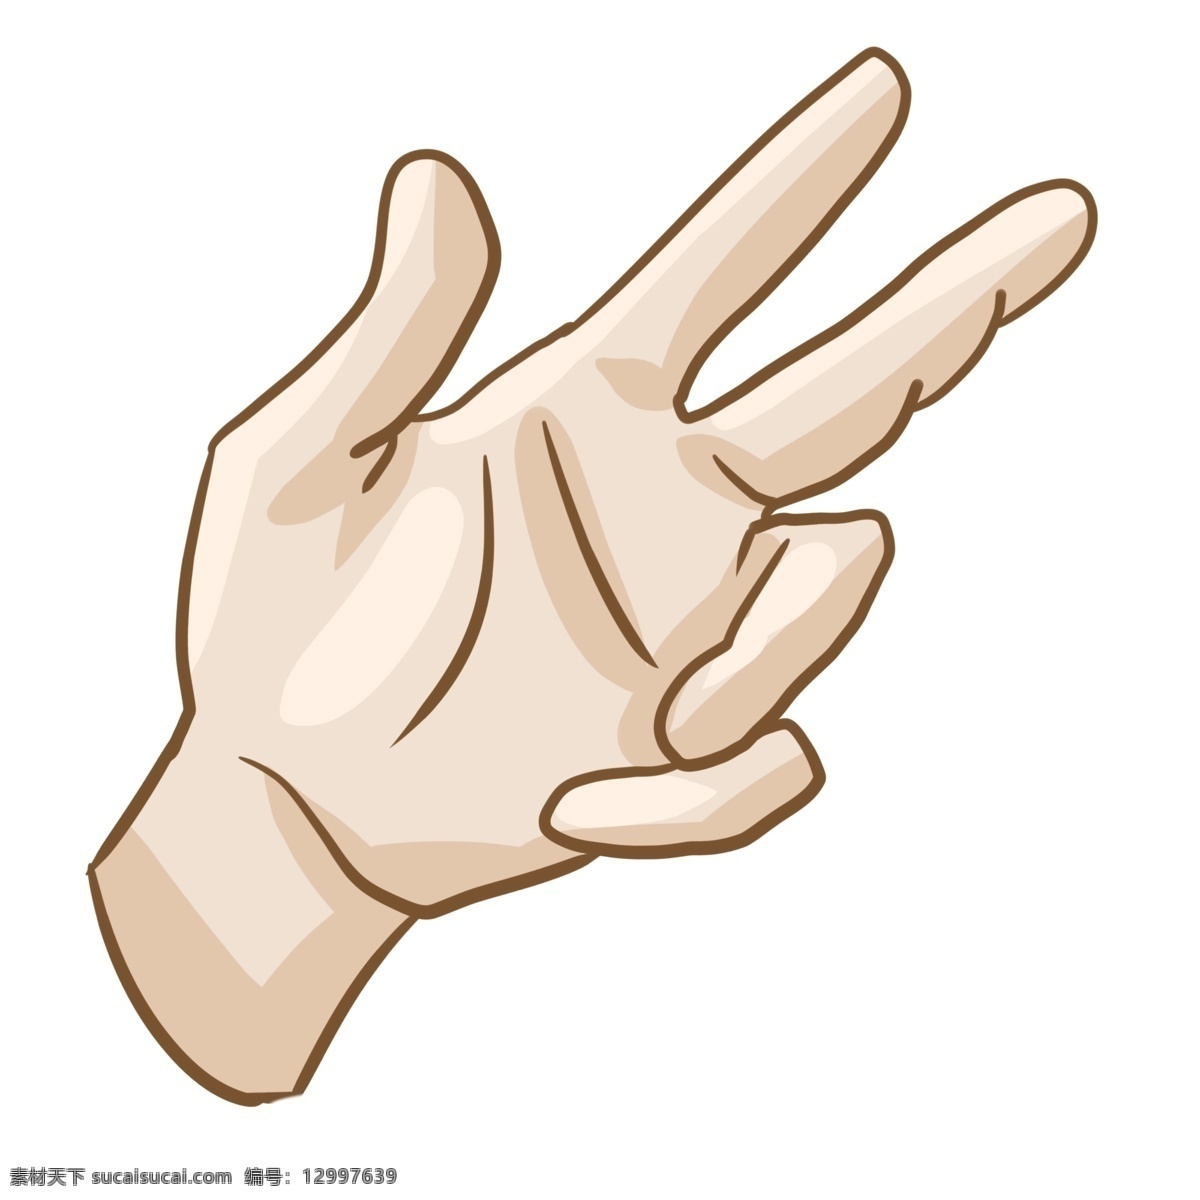 数字 手势 插画 数字3的手势 卡通插画 手势插画 摆姿势 肢体语言 手语 哑语 比划 3个的手势